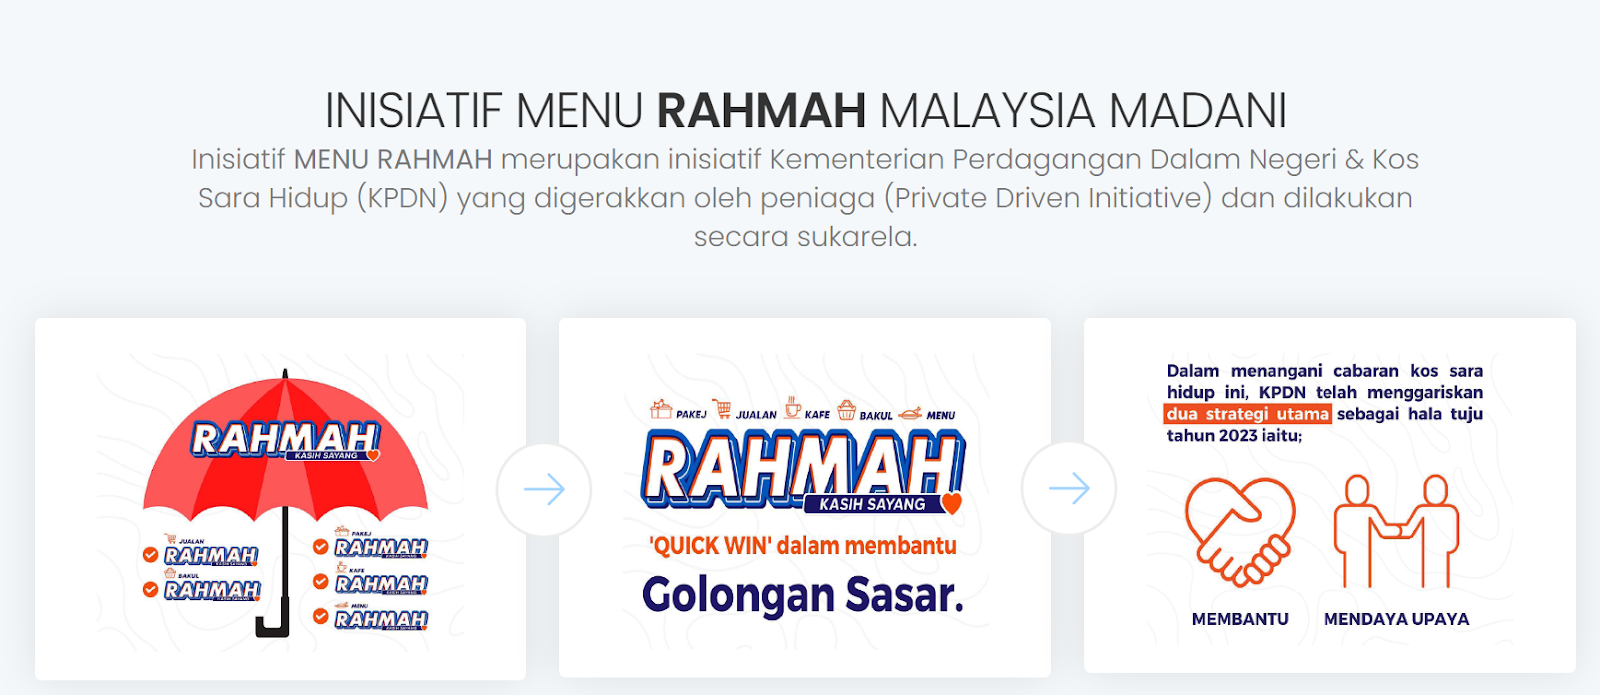 Menu Rahmah McD: Set Burger Ayam, Minuman Dan Bubur RM5 sahaja!